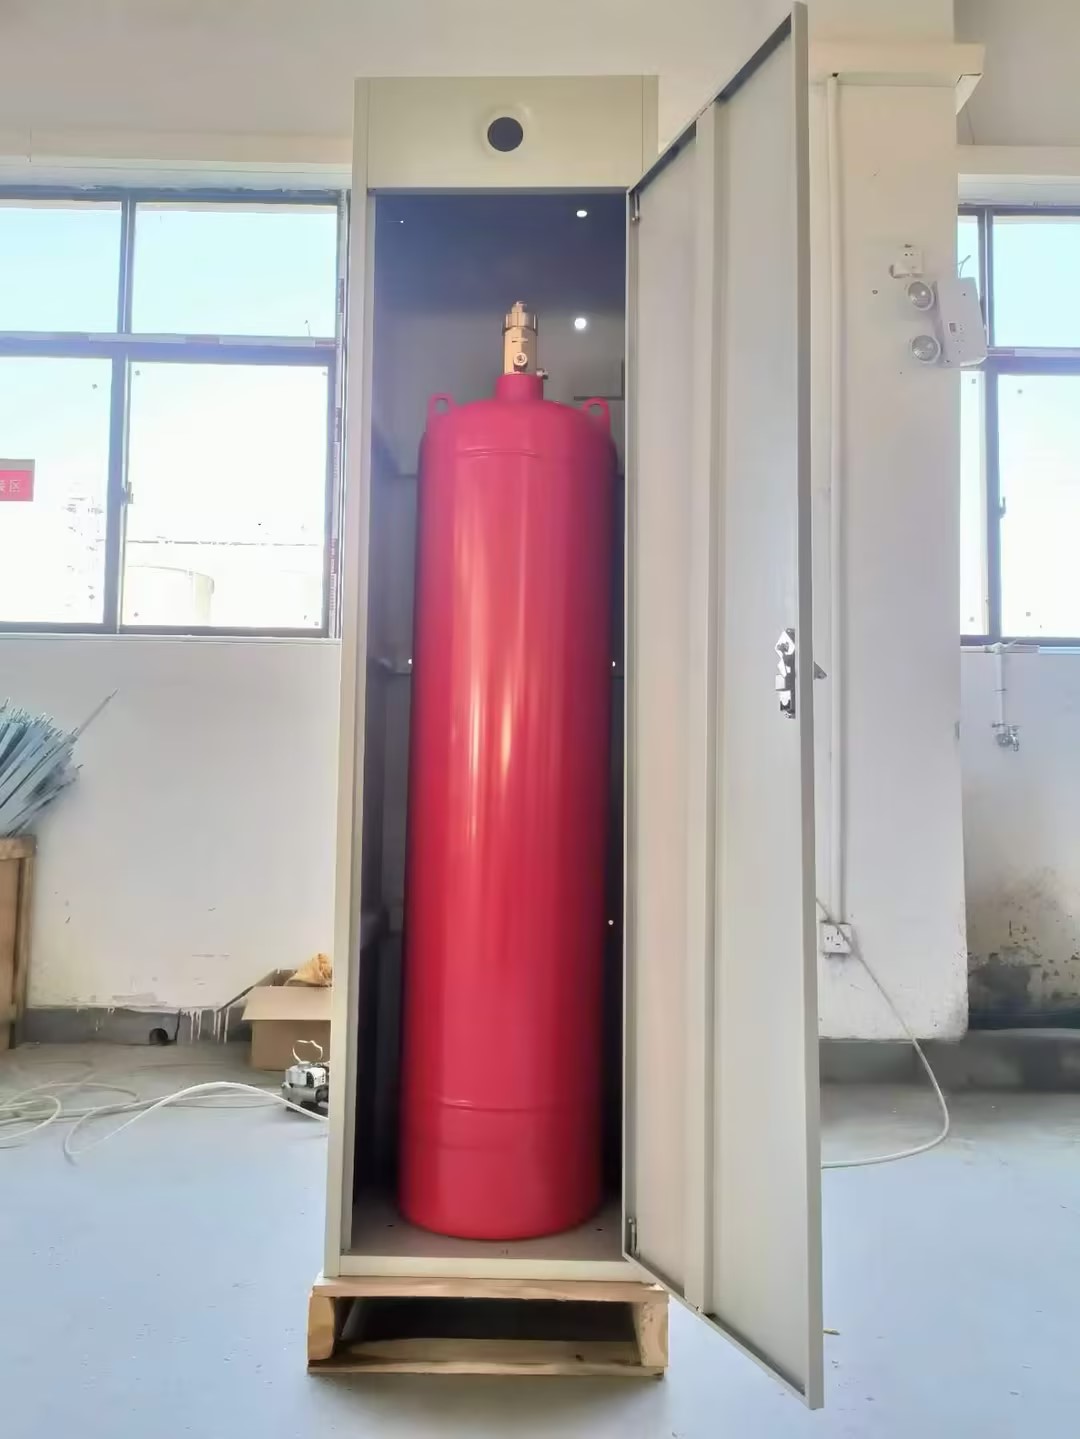 维肯 柜式七氟丙烷灭火装置 含药剂GQQ120/2.5-柜式七氟丙烷